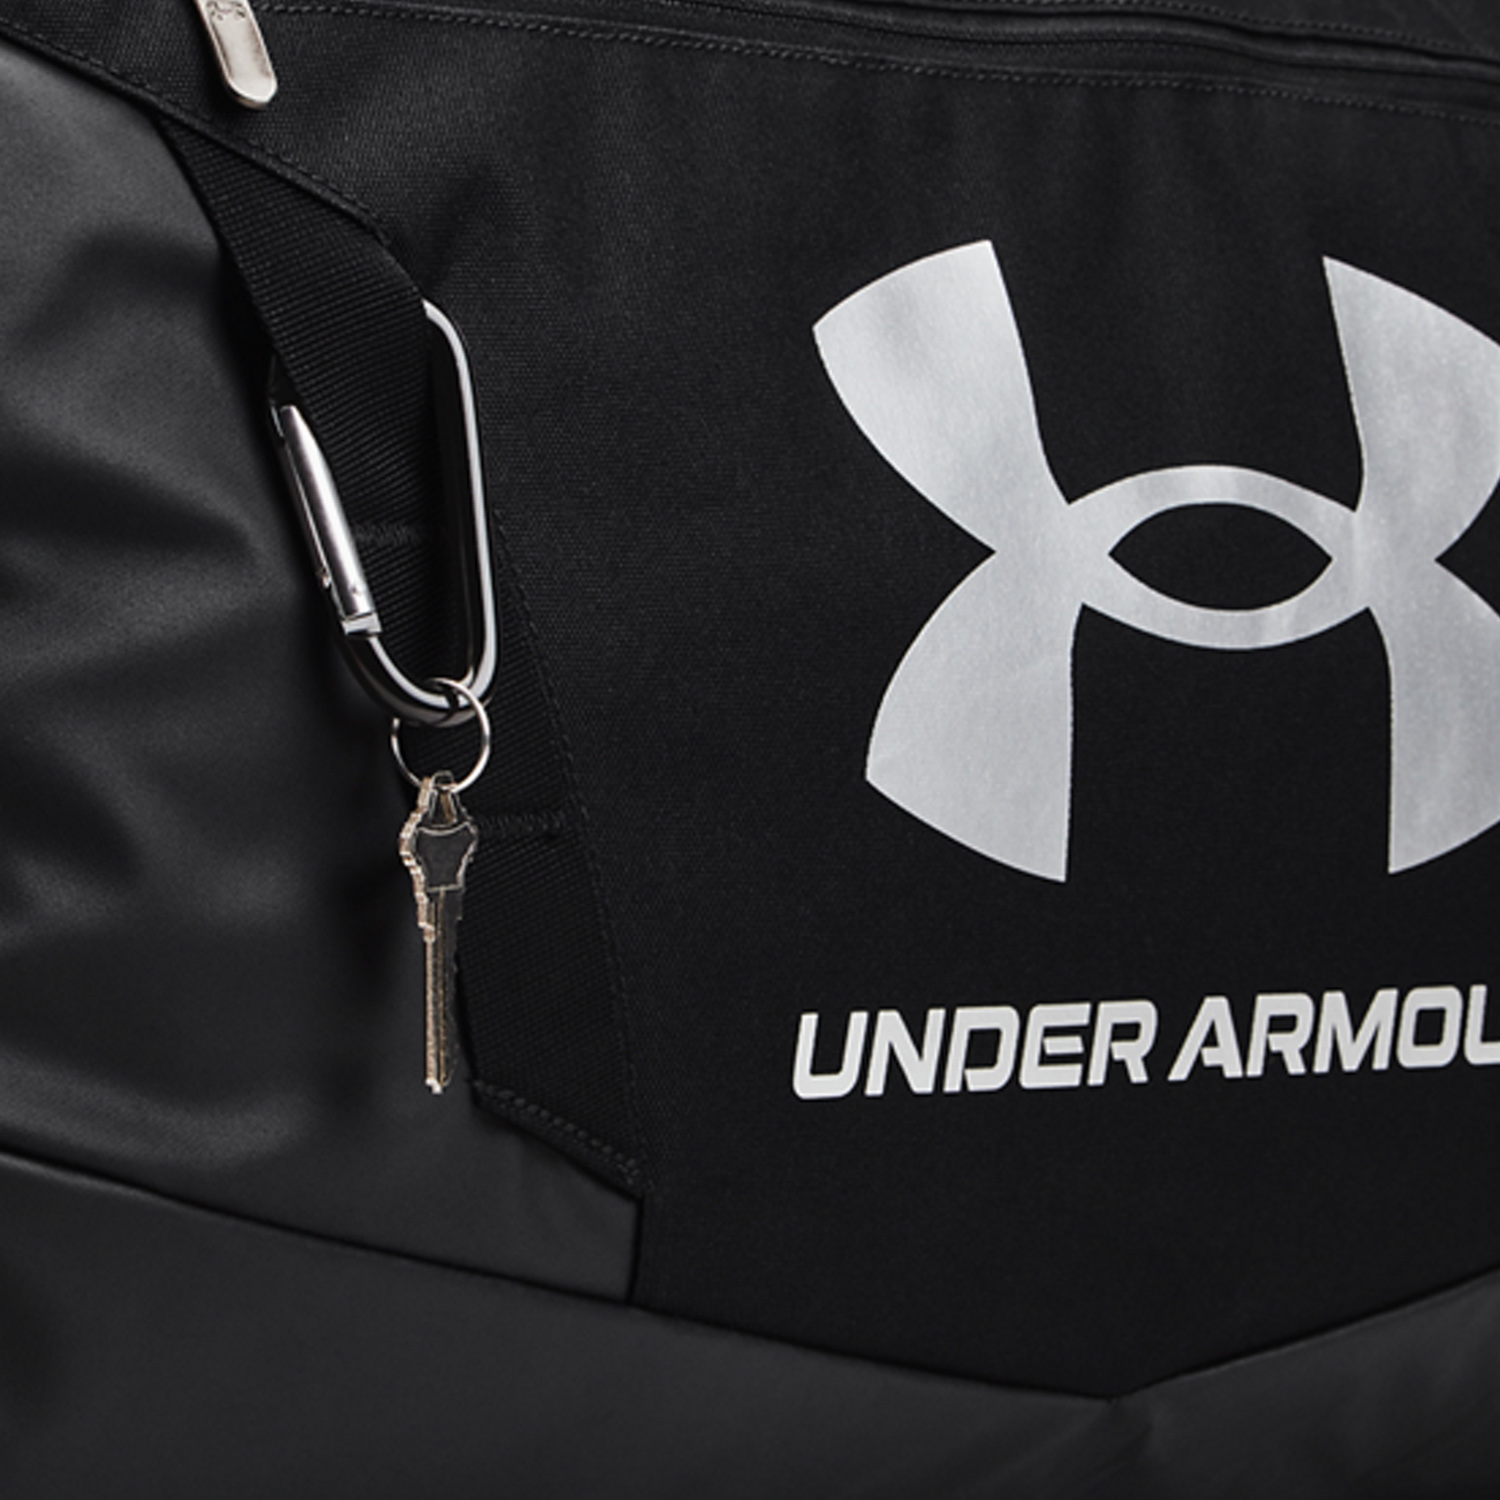 UA Undeniable 5.0 Large Duffle Bag